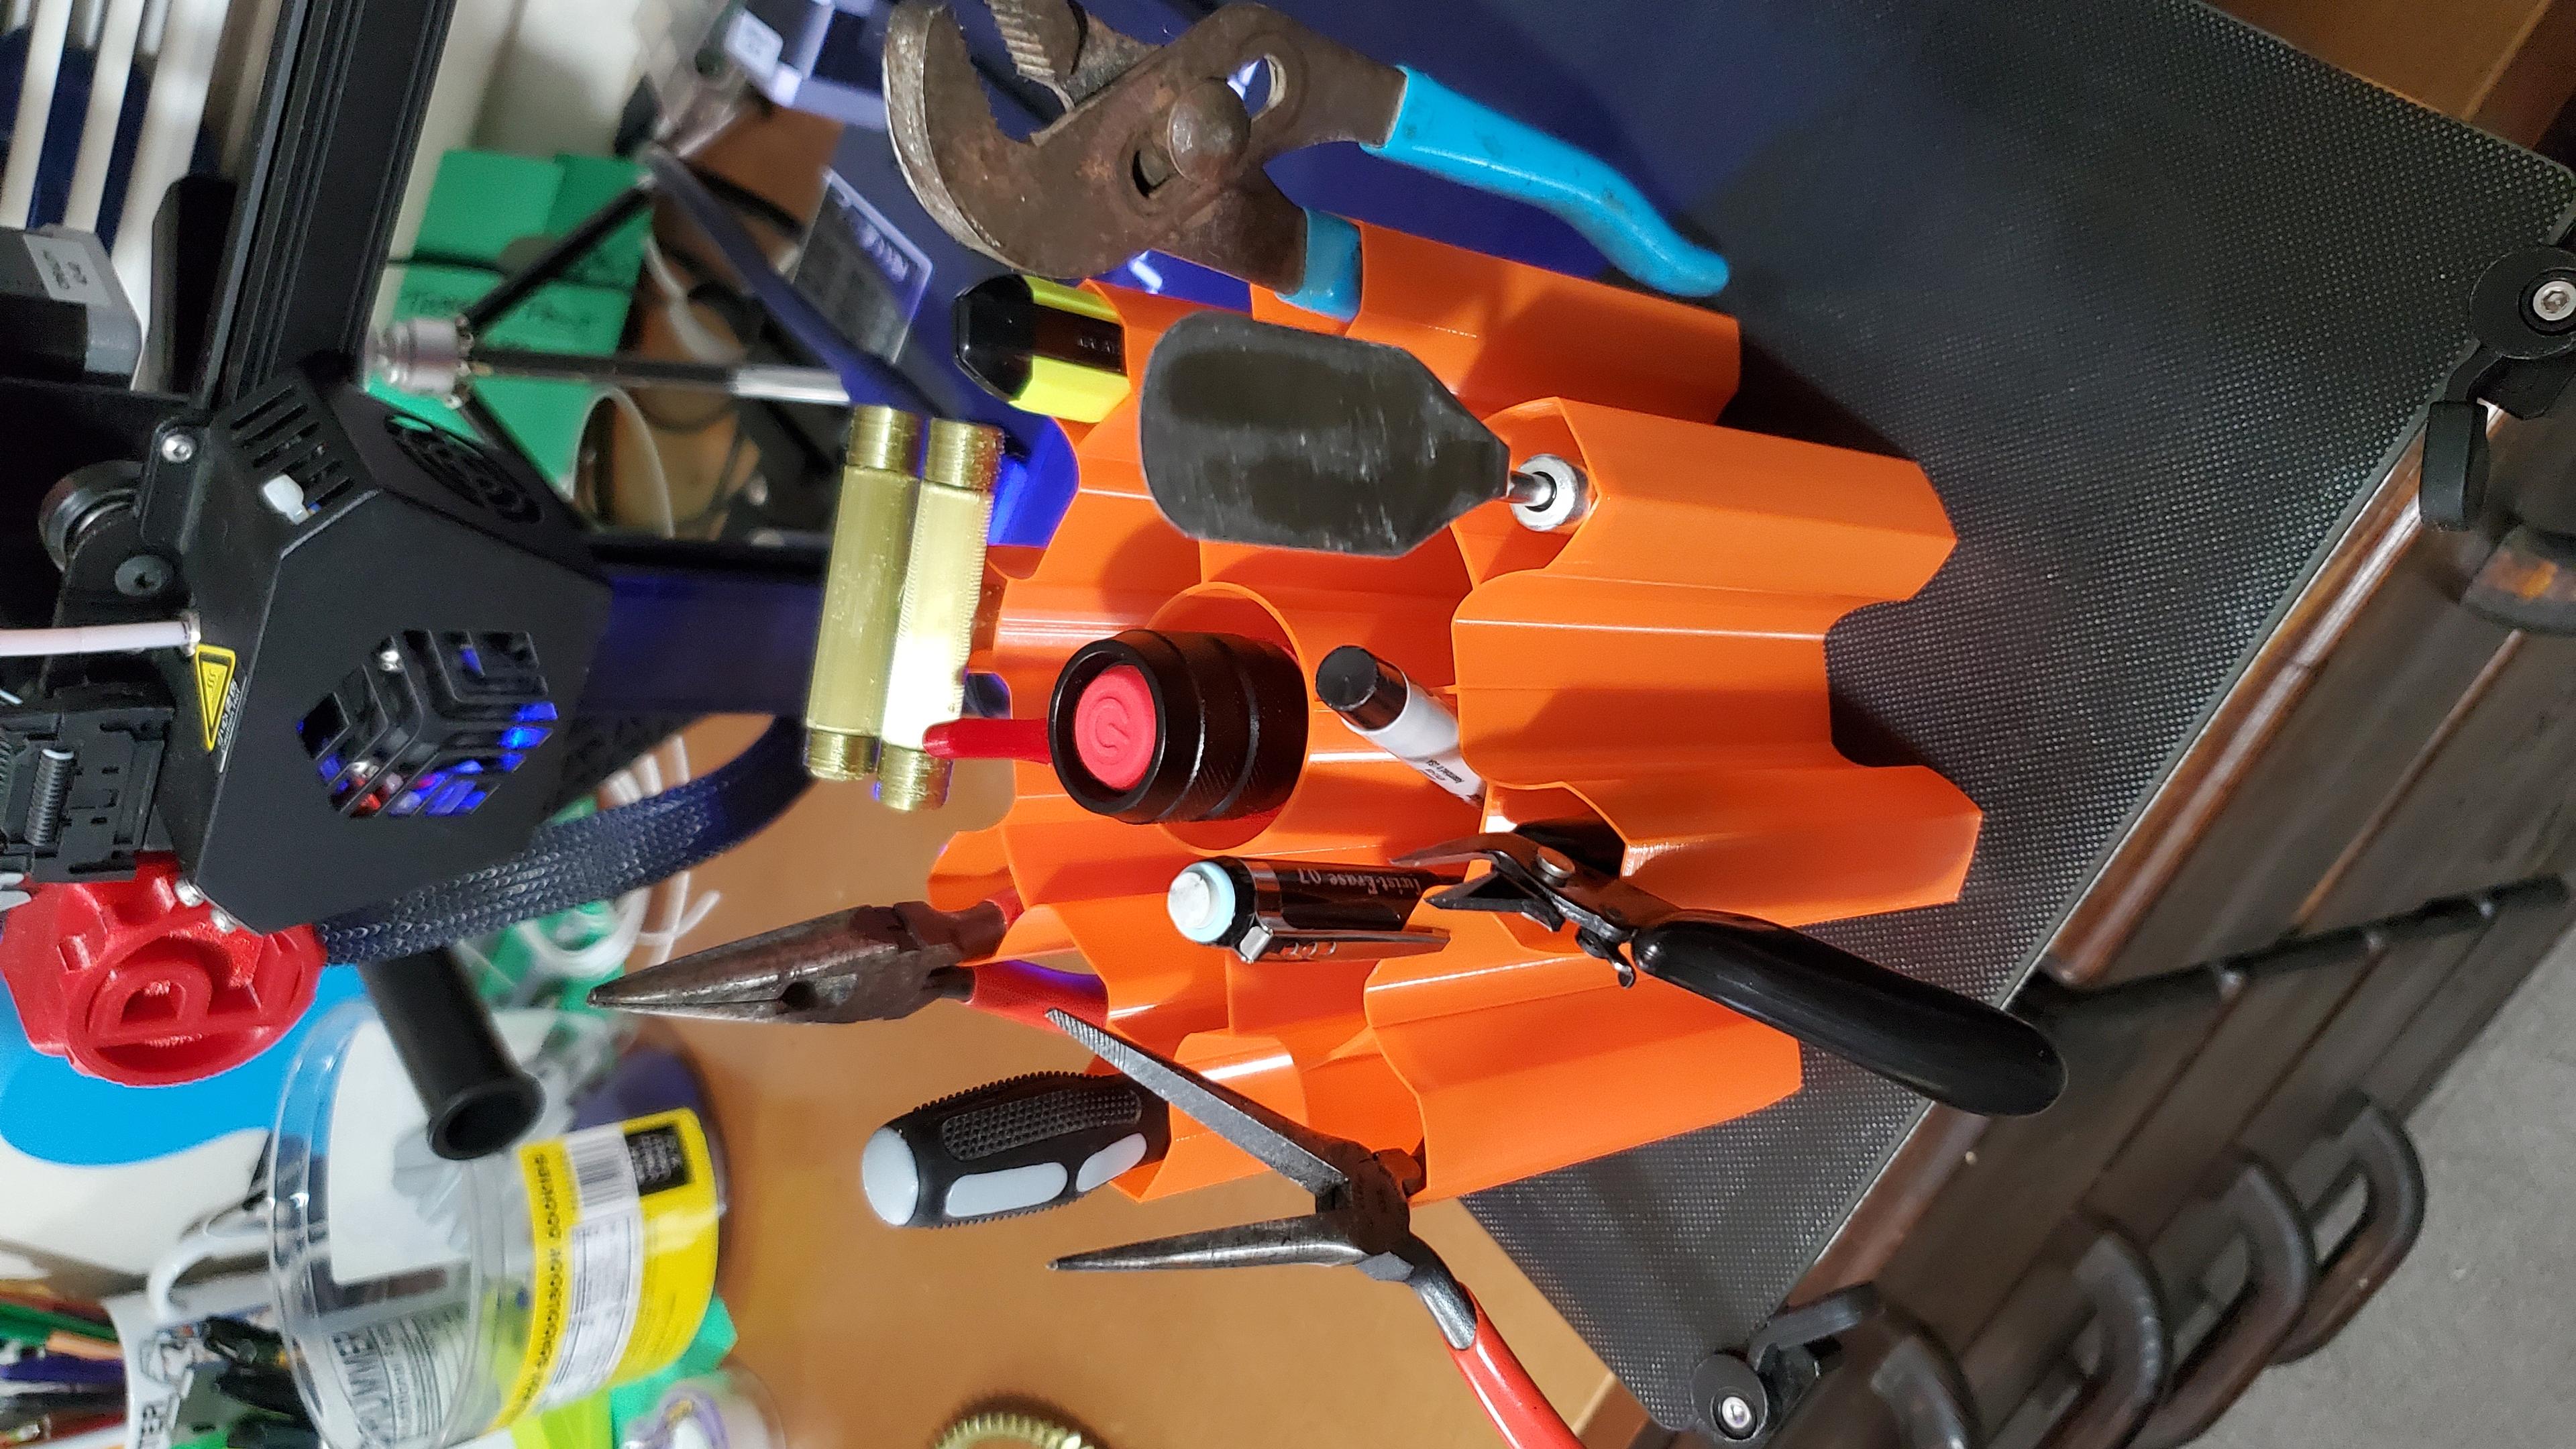 Vase mode gear tool holder 3d model